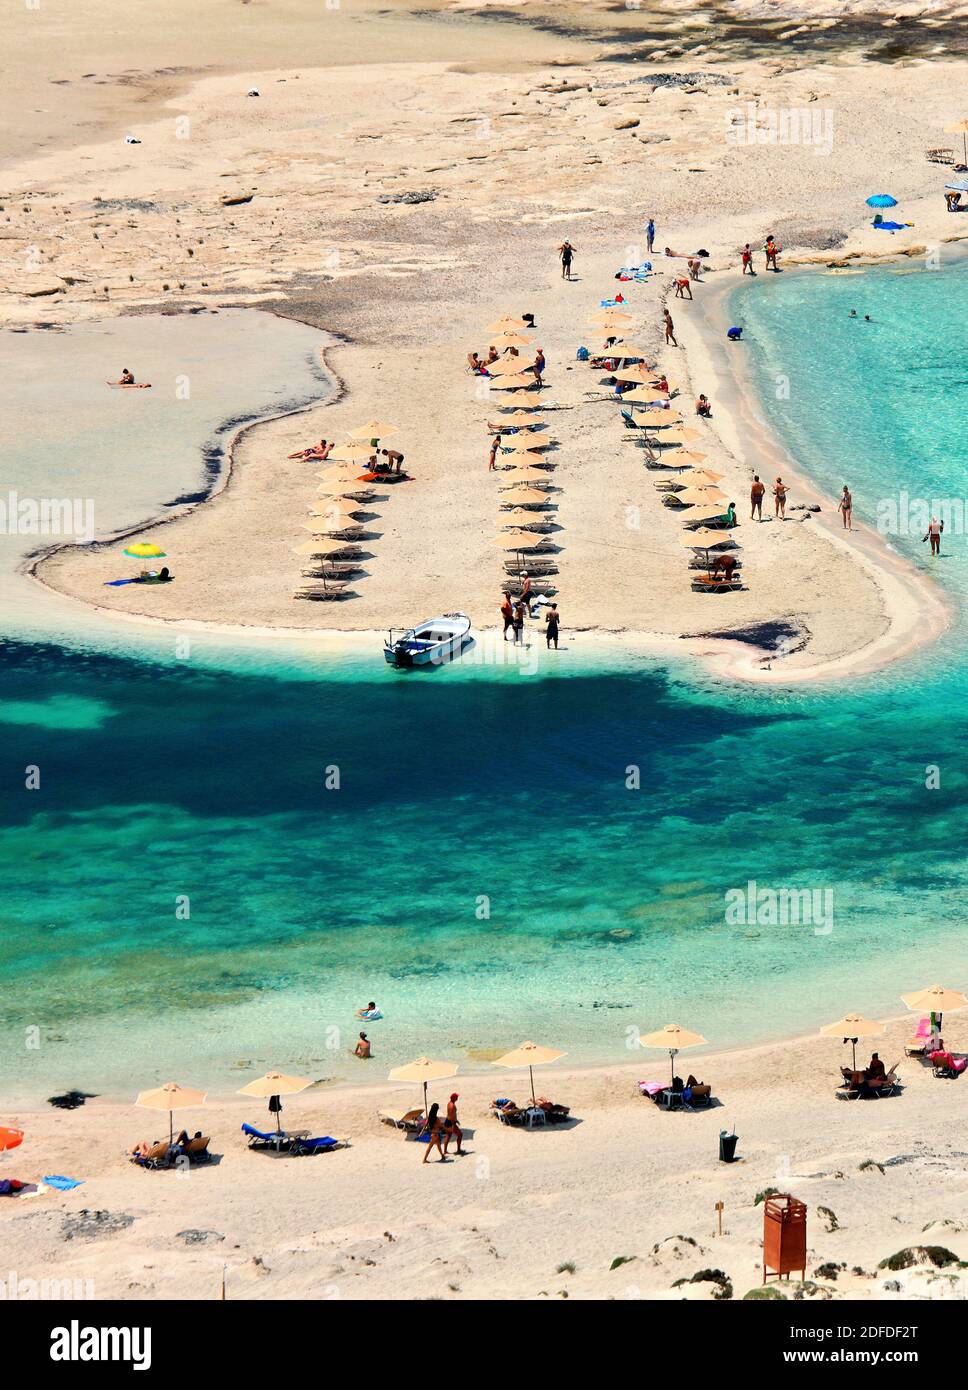 Balos Beach, sulla parte nord-occidentale dell'isola di Creta, Hania (o 'la Canea') prefettura. E' una delle famose spiagge di mos Grecia. Foto Stock